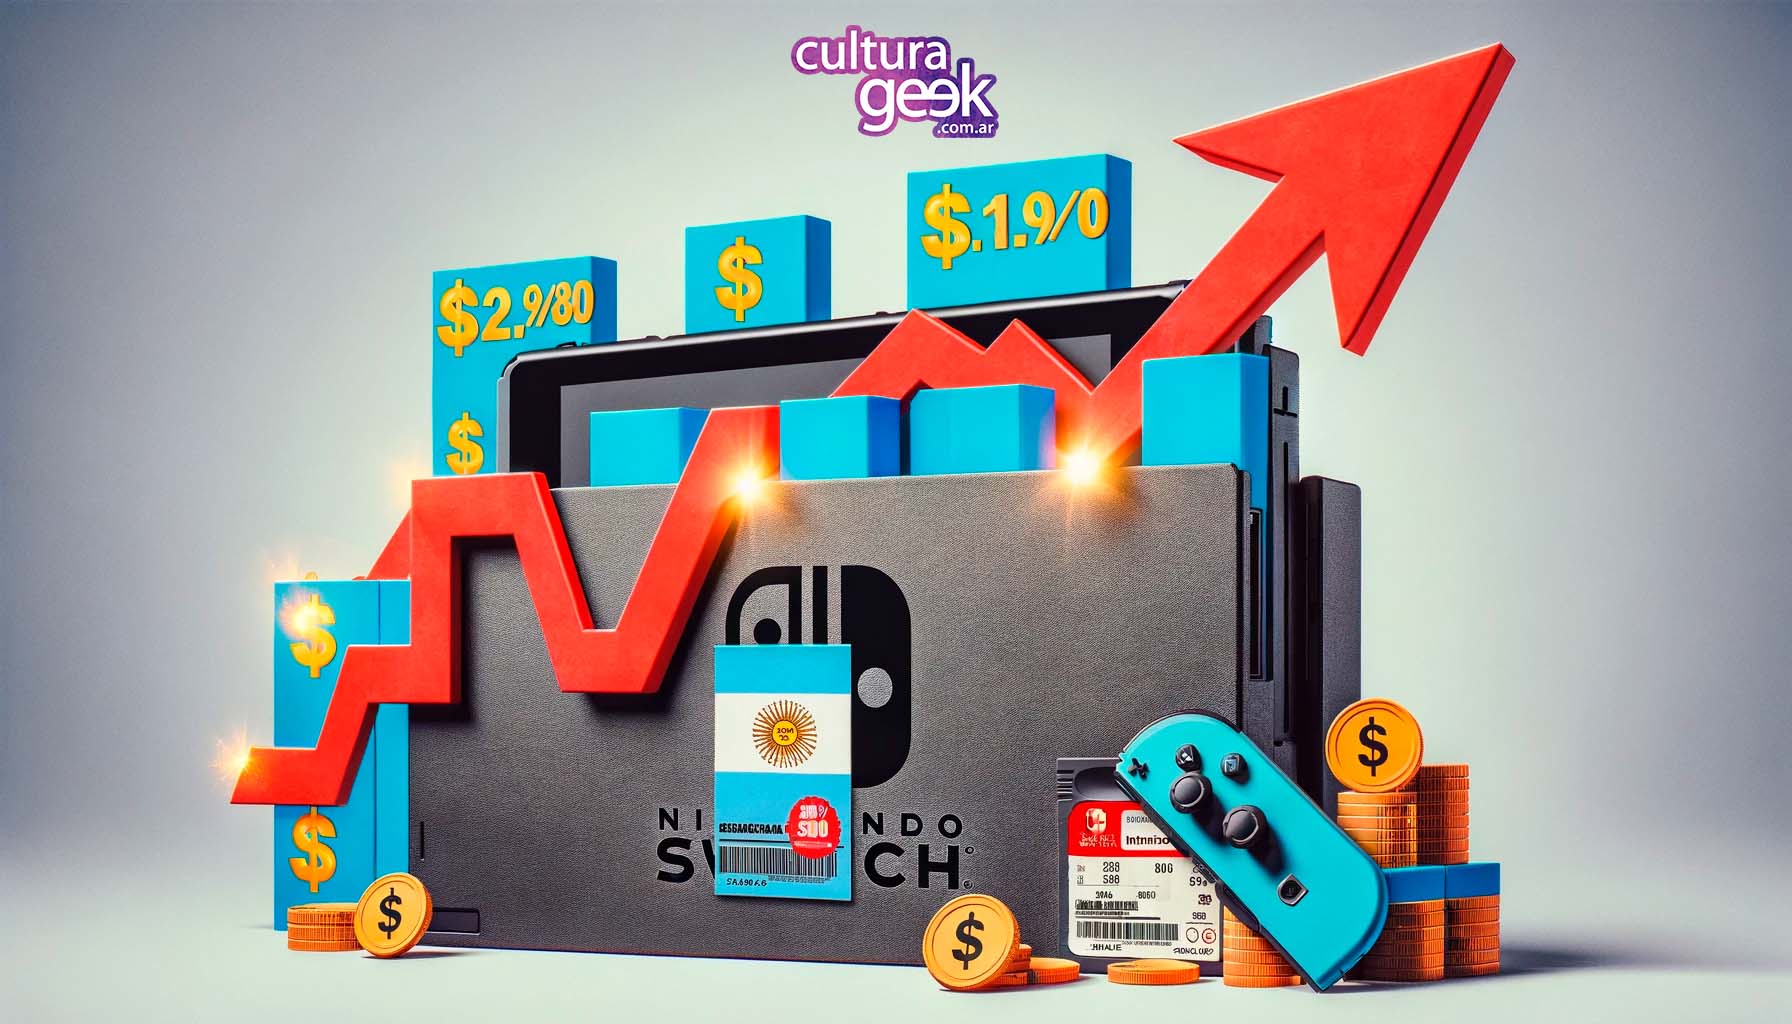 Nintendo eShop Argentina pone fin al 'truco' para conseguir juegos más  baratos, Nintendo, Videojuegos